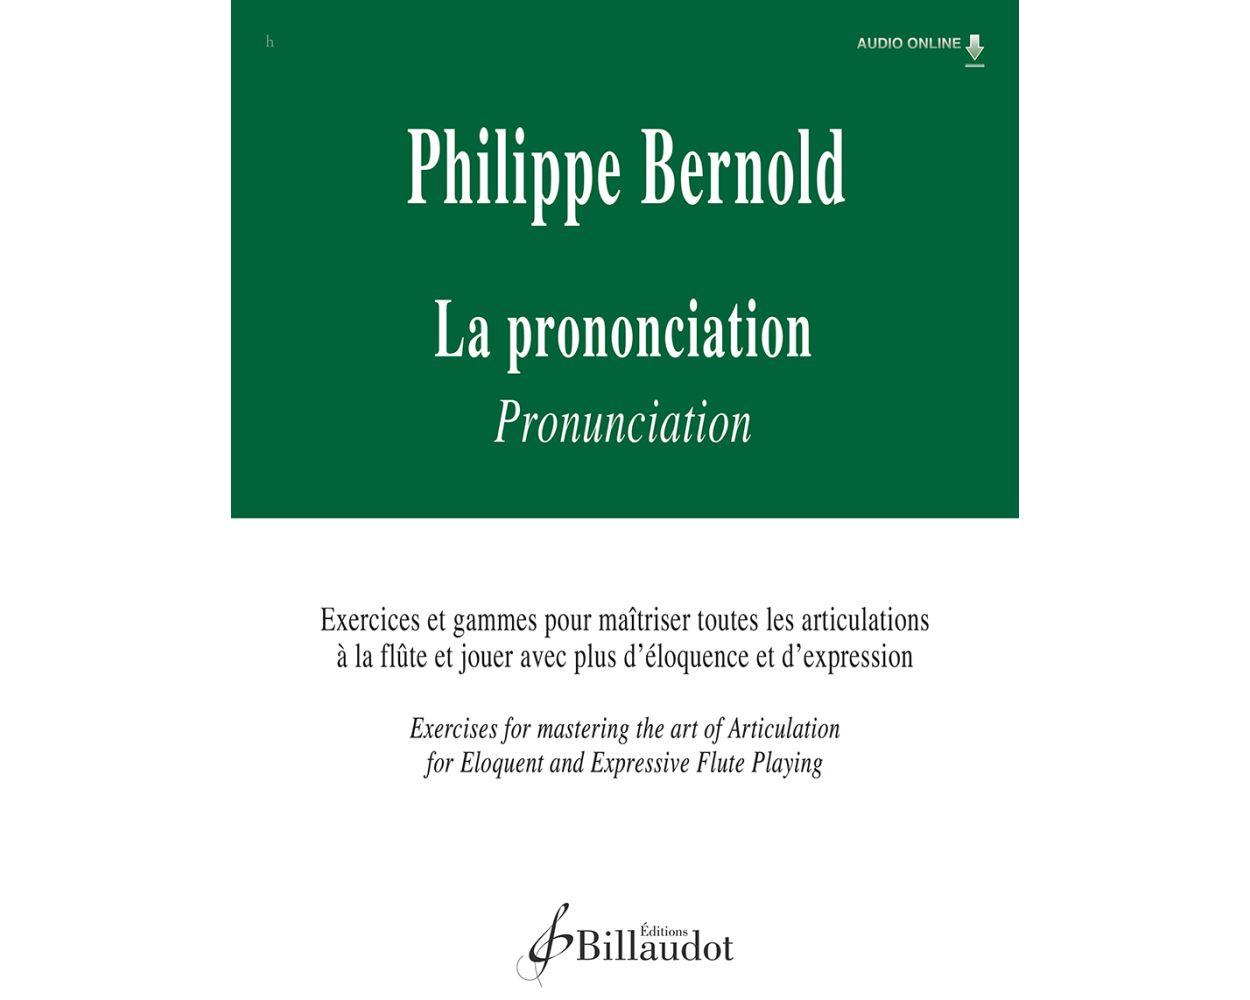 La prononciation, Exercises et gammes pour maîtriser toutes les articulations à la flûte et jouer avec plus d'éloquenc - Philippe Bernold | Suono Flauti